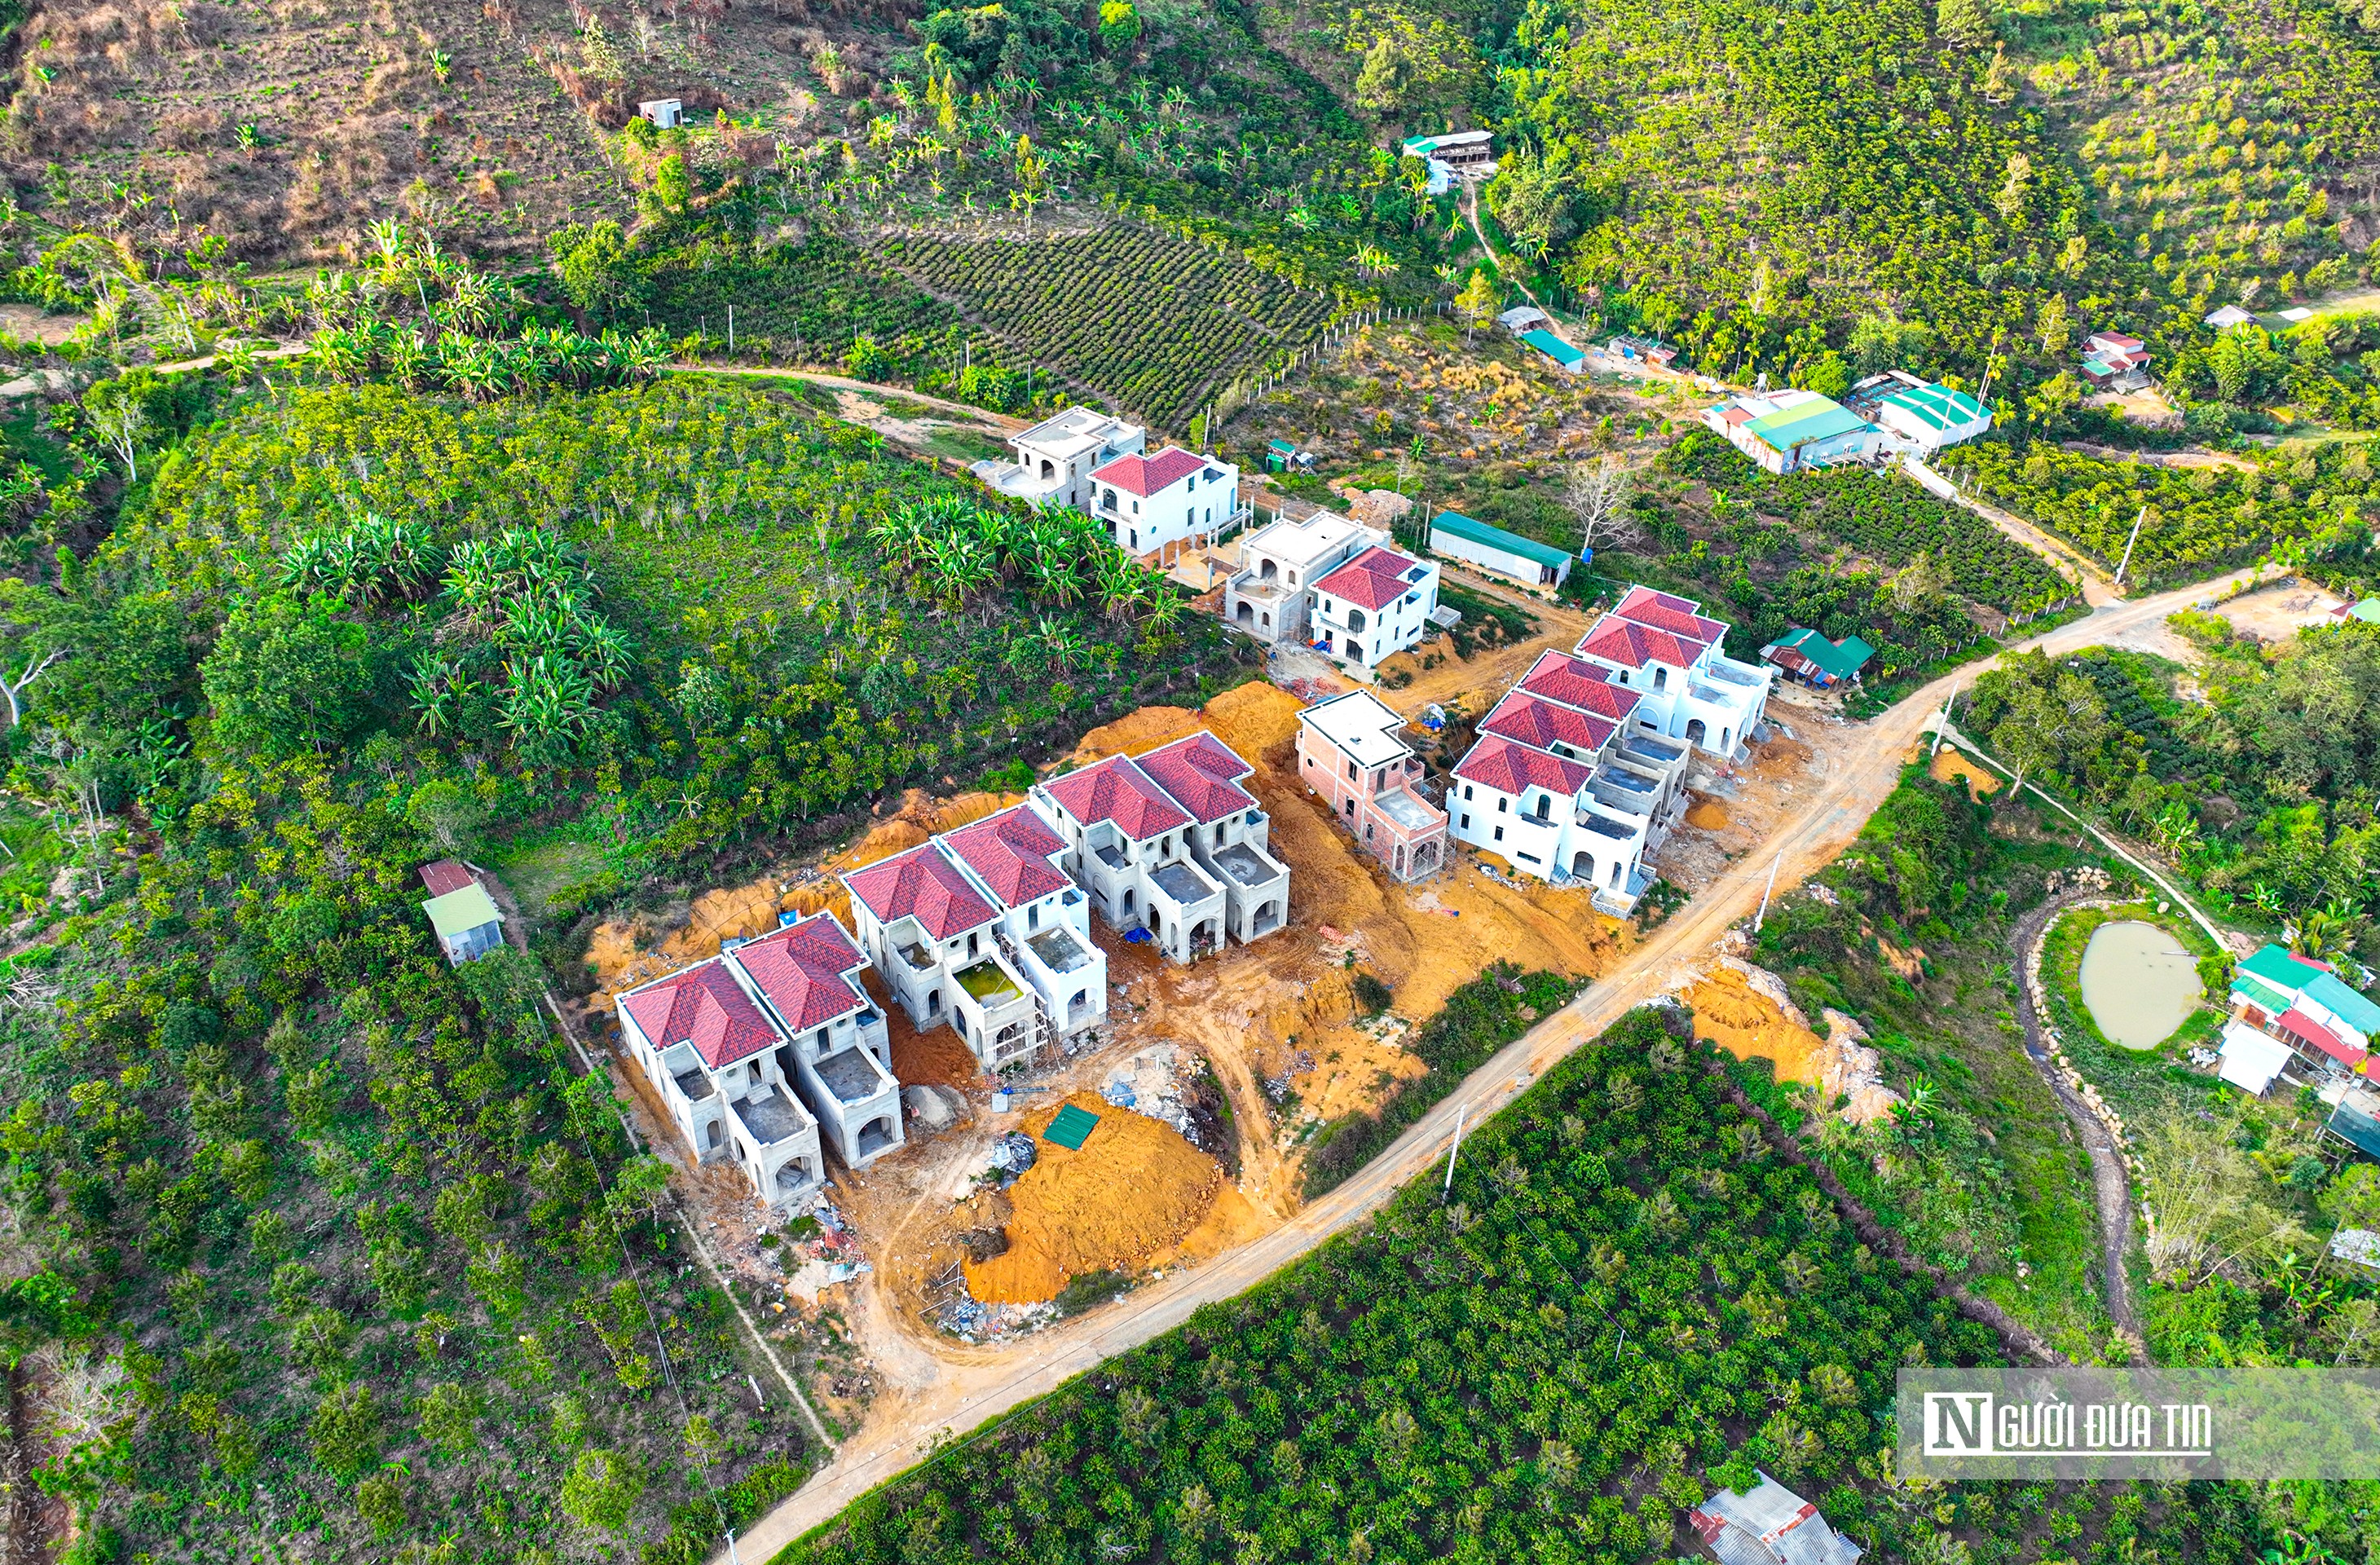 Bất động sản - Lâm Đồng: UBND tỉnh chỉ đạo xử lý nghiêm vụ xây dựng 22 căn nhà không phép (Hình 4).